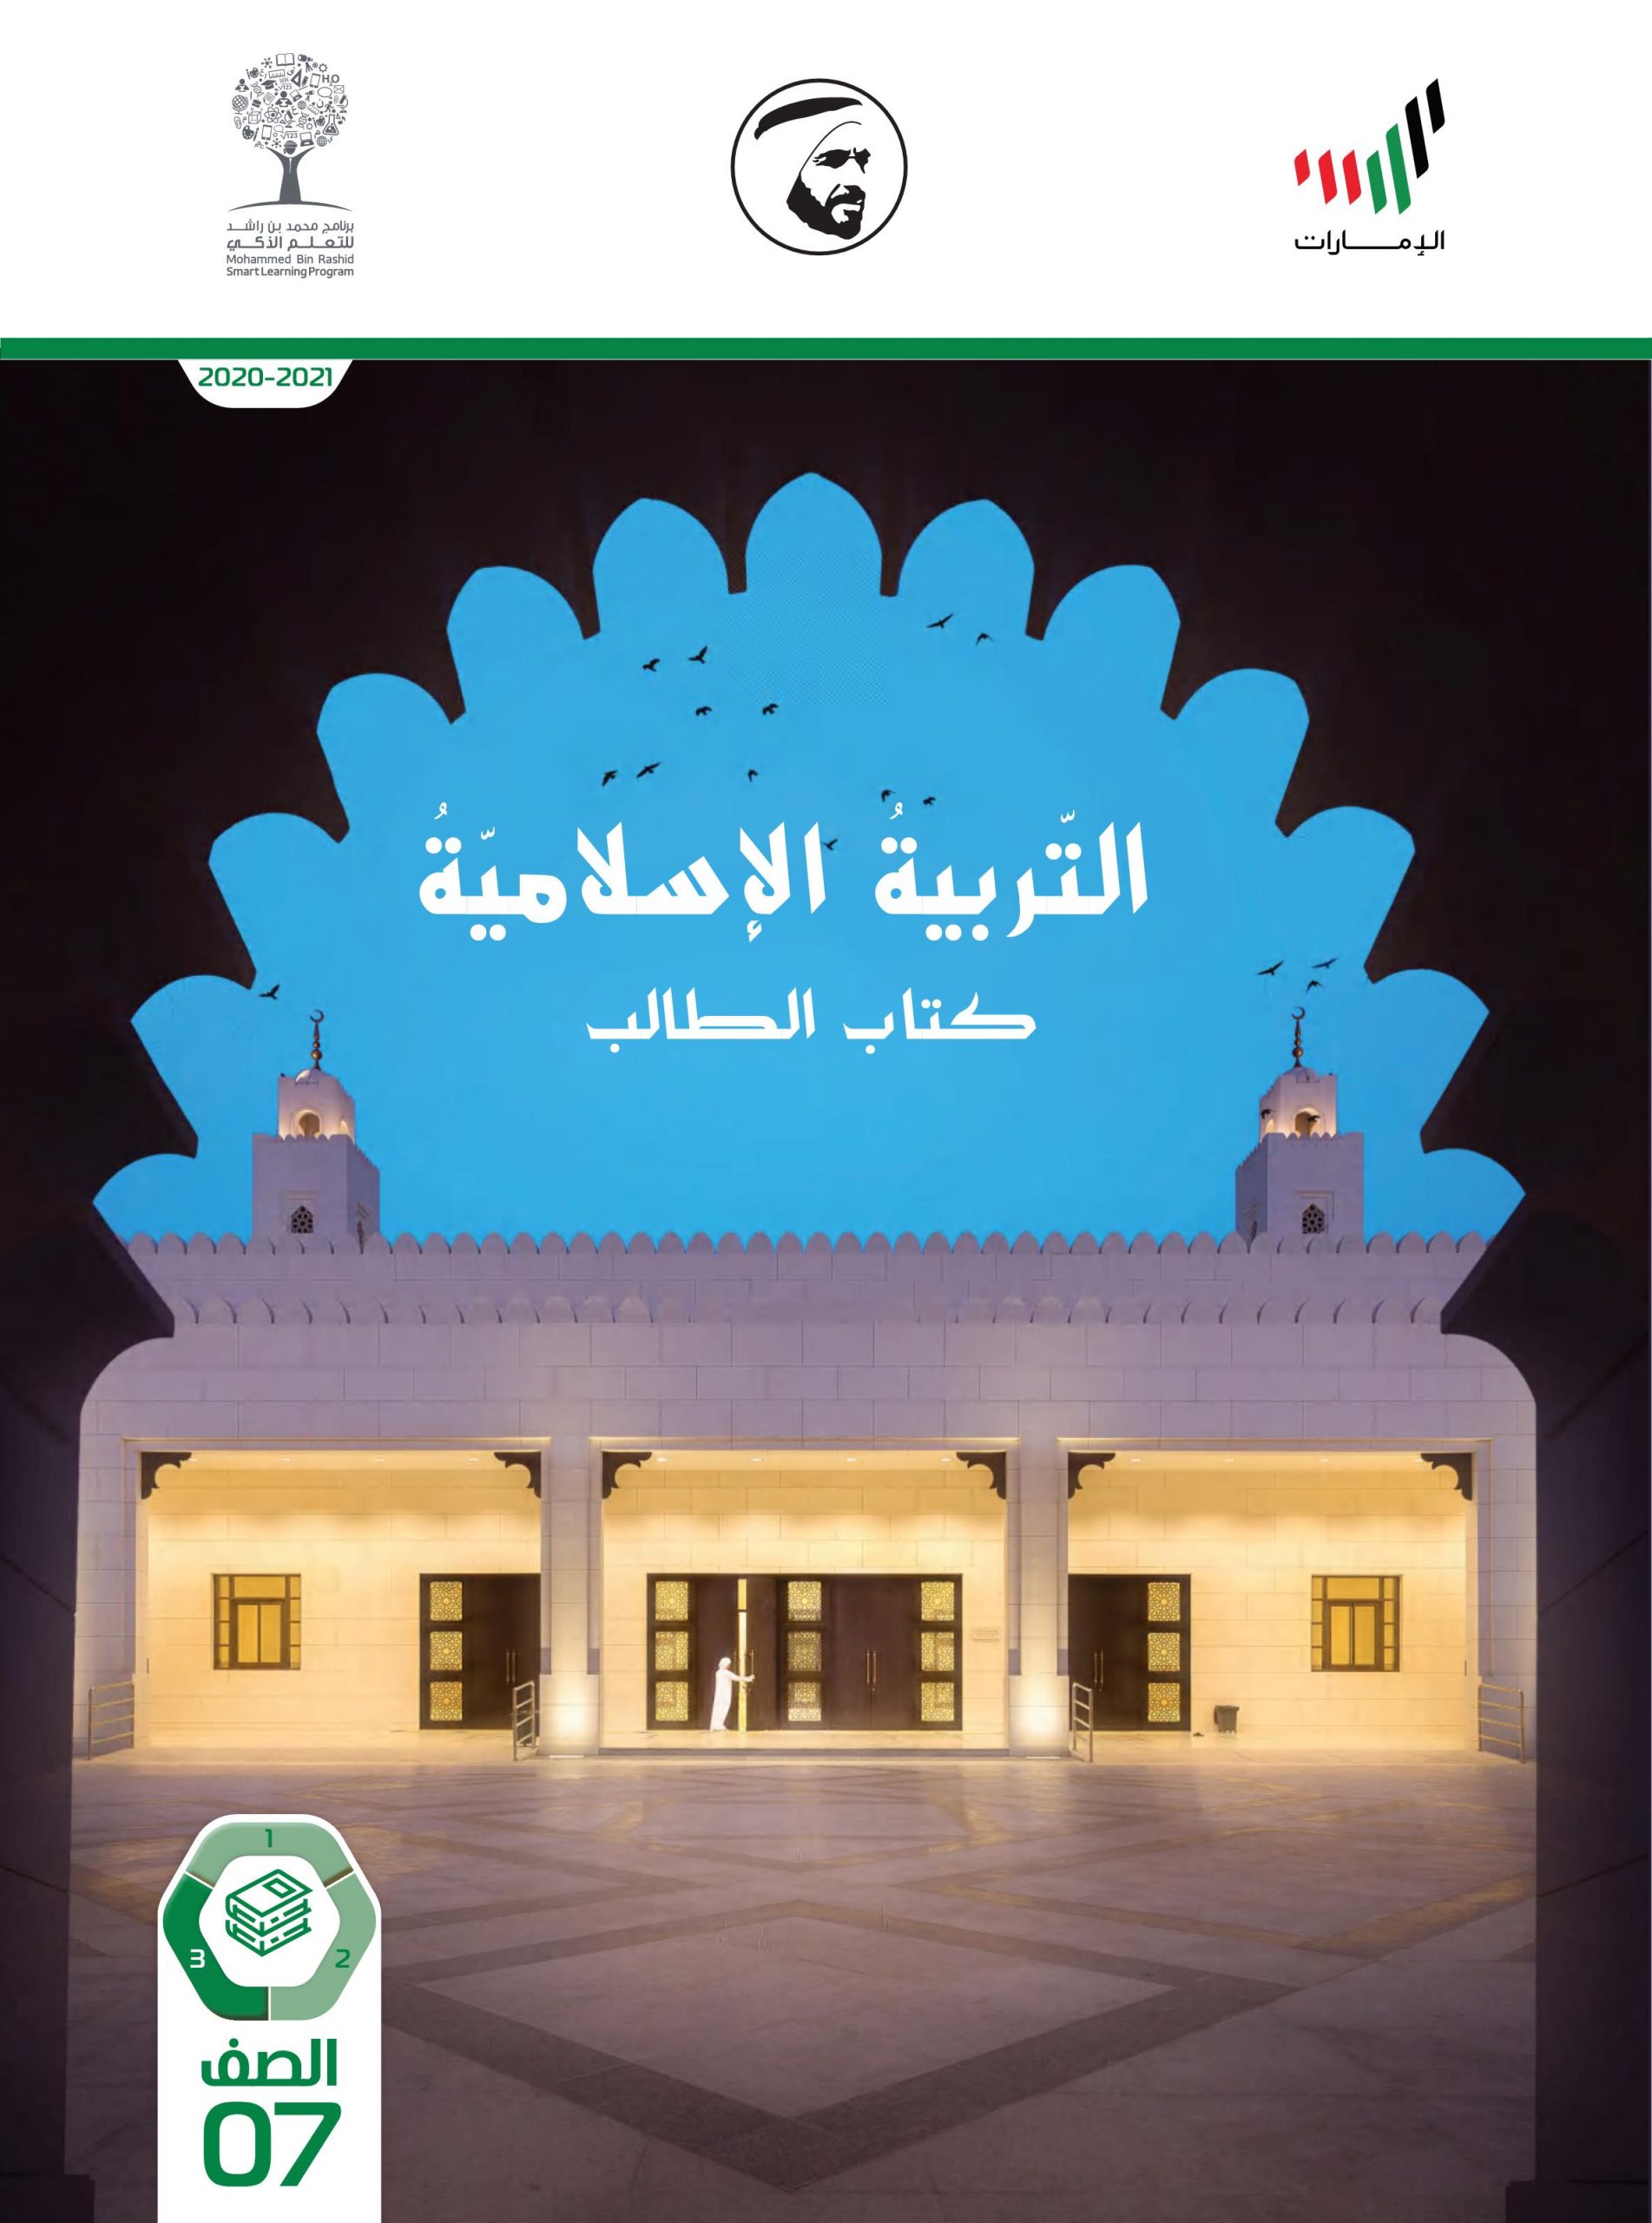 كتاب الطالب الفصل الدراسي الثالث 2020-2021 الصف السابع مادة التربية الإسلامية